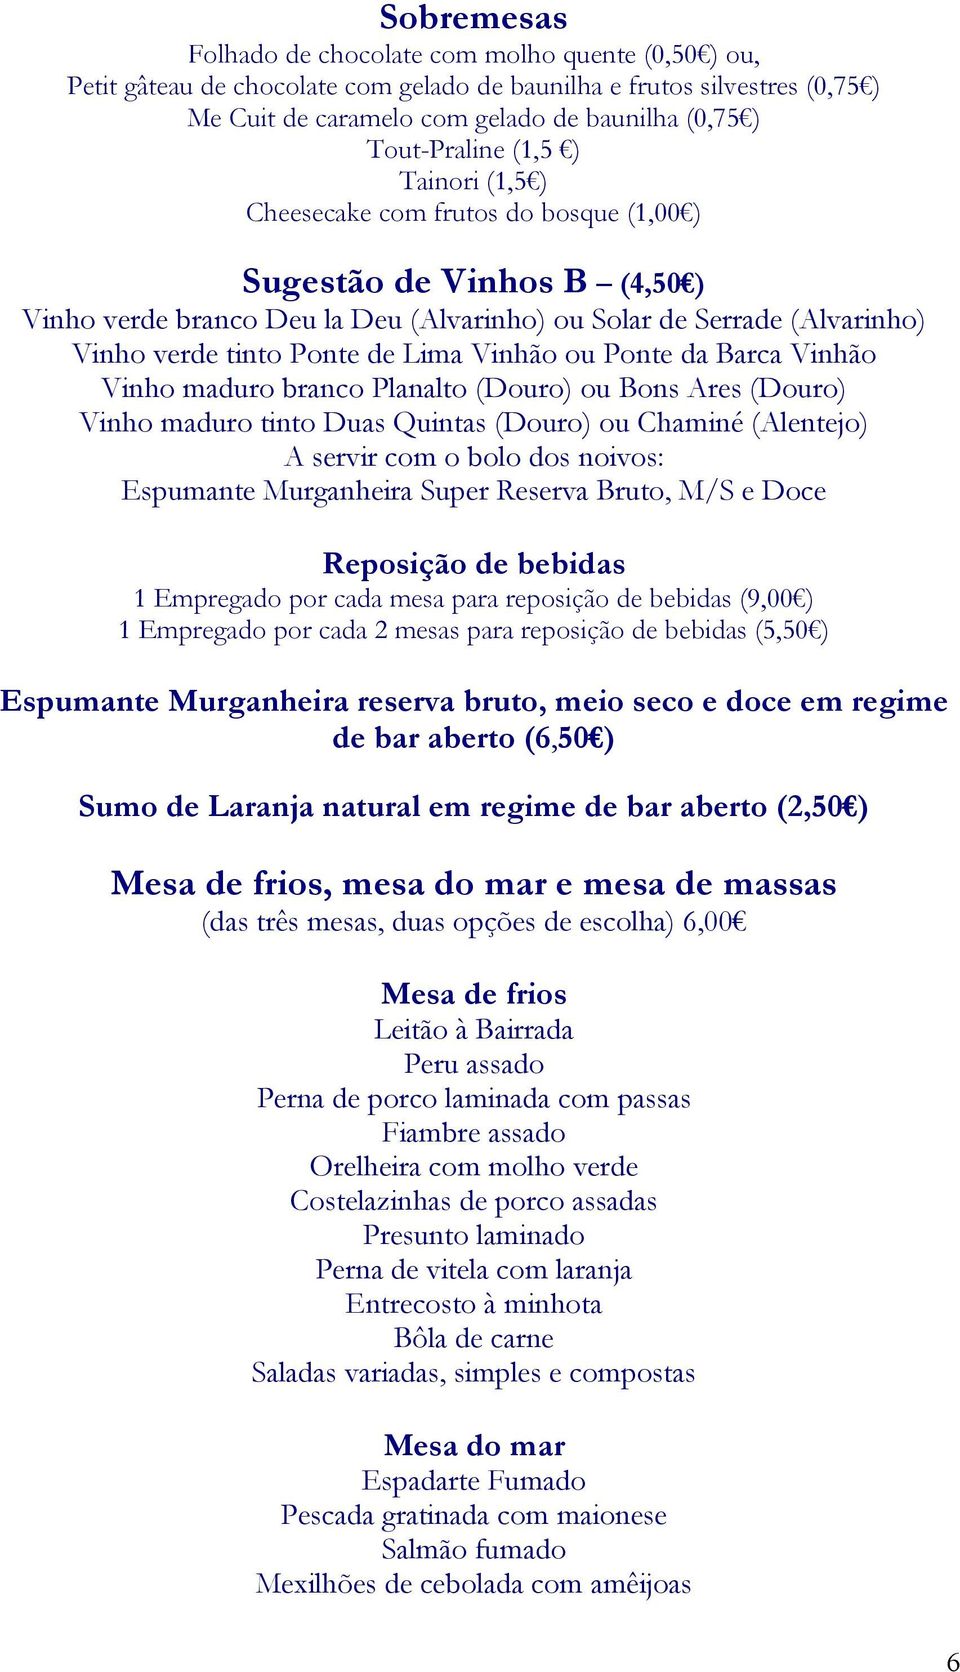 Ponte de Lima Vinhão ou Ponte da Barca Vinhão Vinho maduro branco Planalto (Douro) ou Bons Ares (Douro) Vinho maduro tinto Duas Quintas (Douro) ou Chaminé (Alentejo) A servir com o bolo dos noivos: